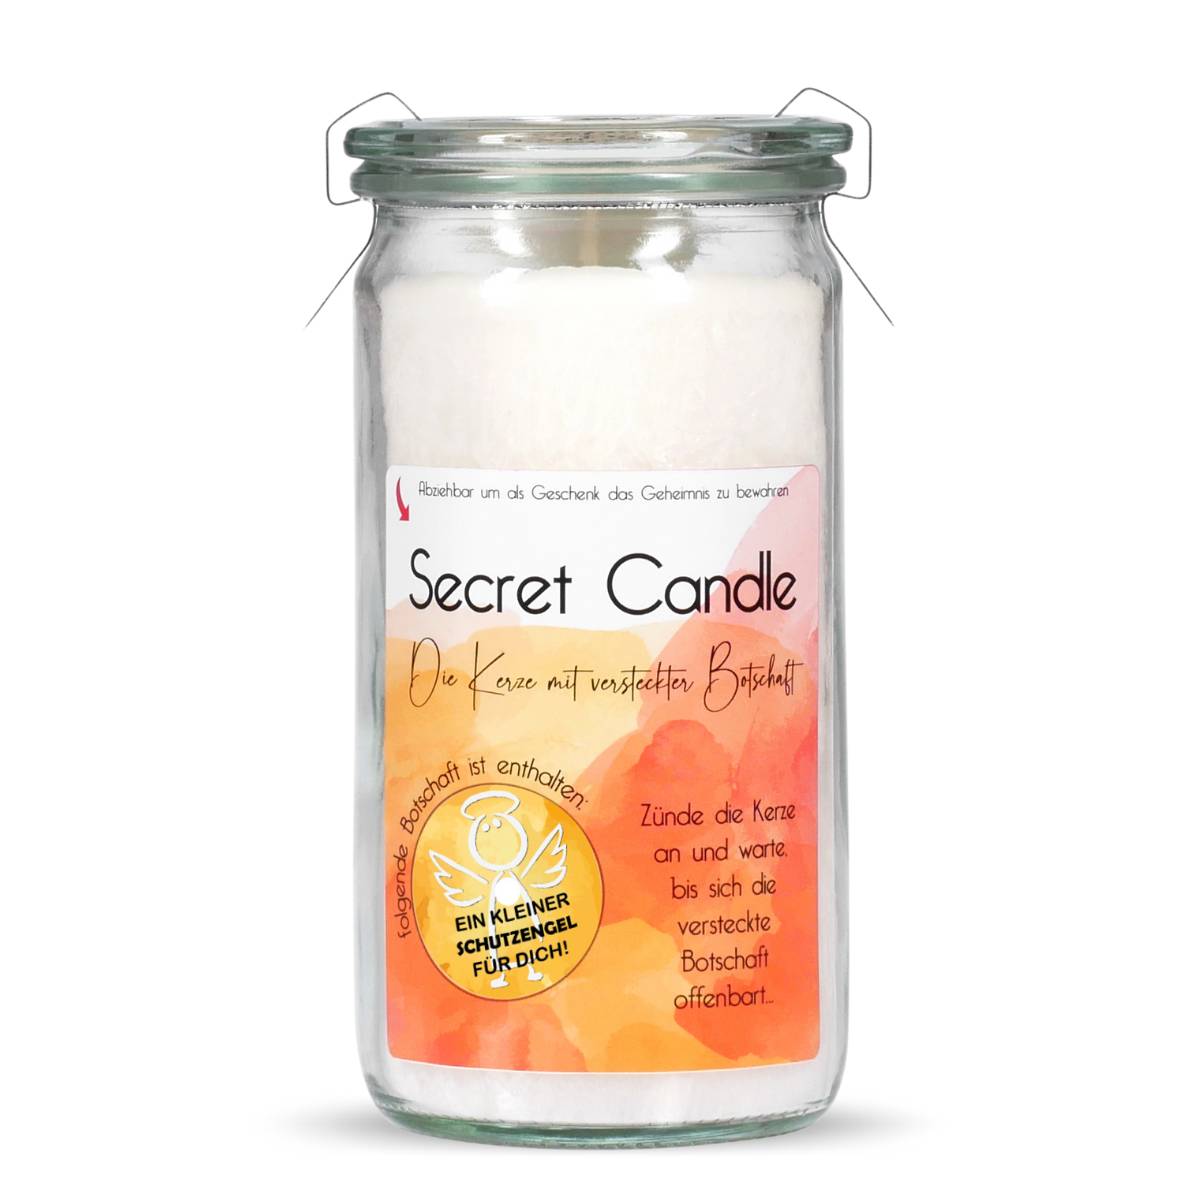 Ein kleiner Schutzengel für dich - Orange Zedernholz - Secret Candle Mini Jumbo Duftkerze im Weckglas